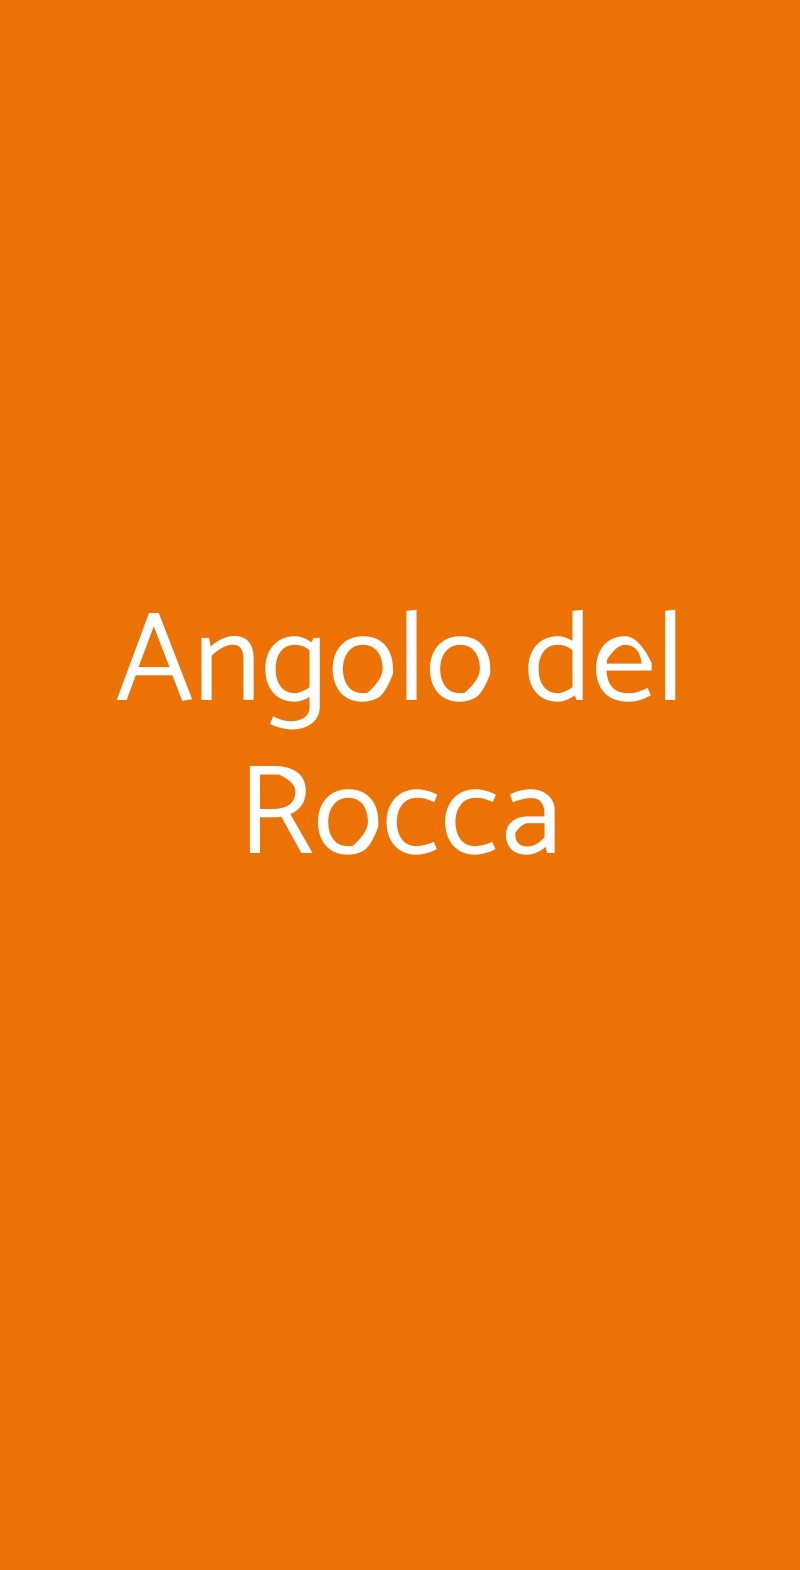 Angolo del Rocca Milano menù 1 pagina